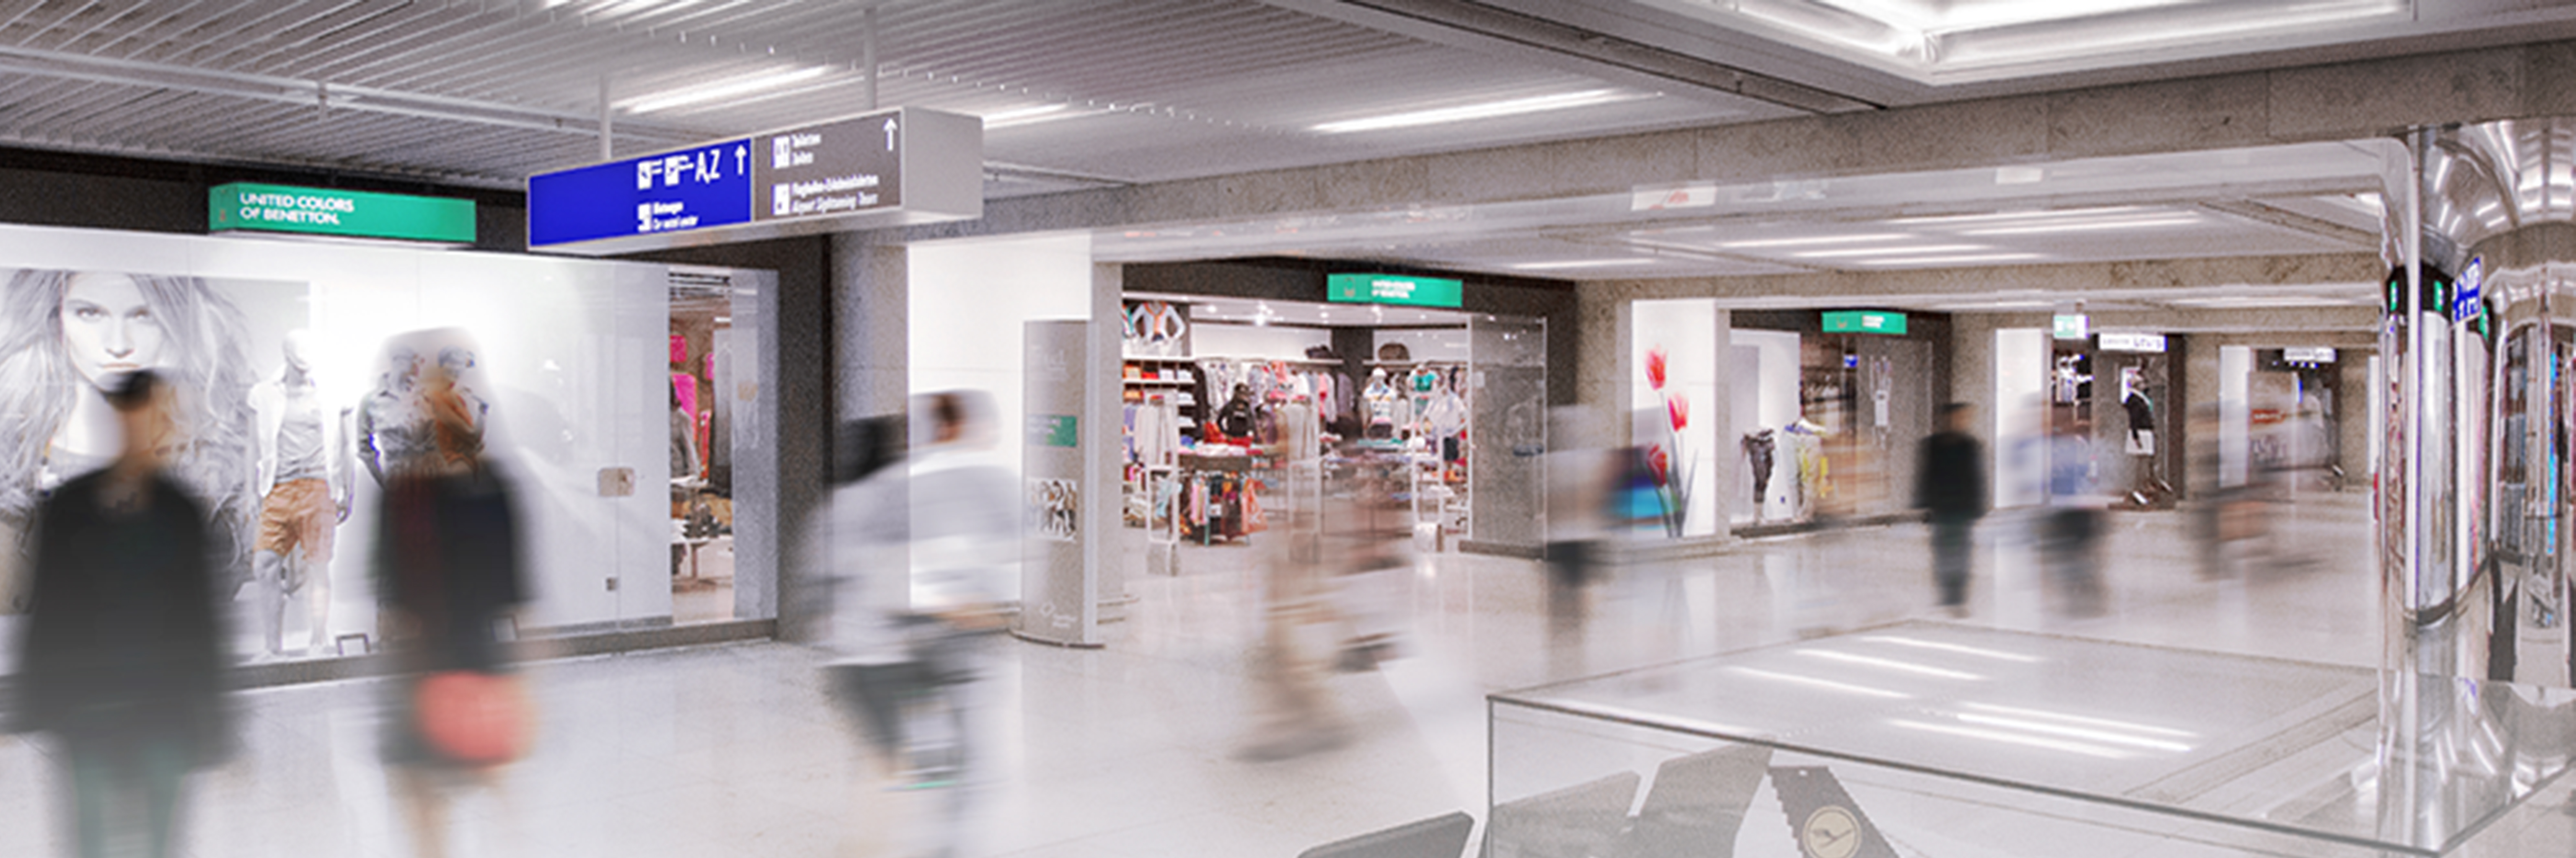 L’affichage dynamique arrive à l’aéroport de Francfort pour faciliter le voyage des passagers